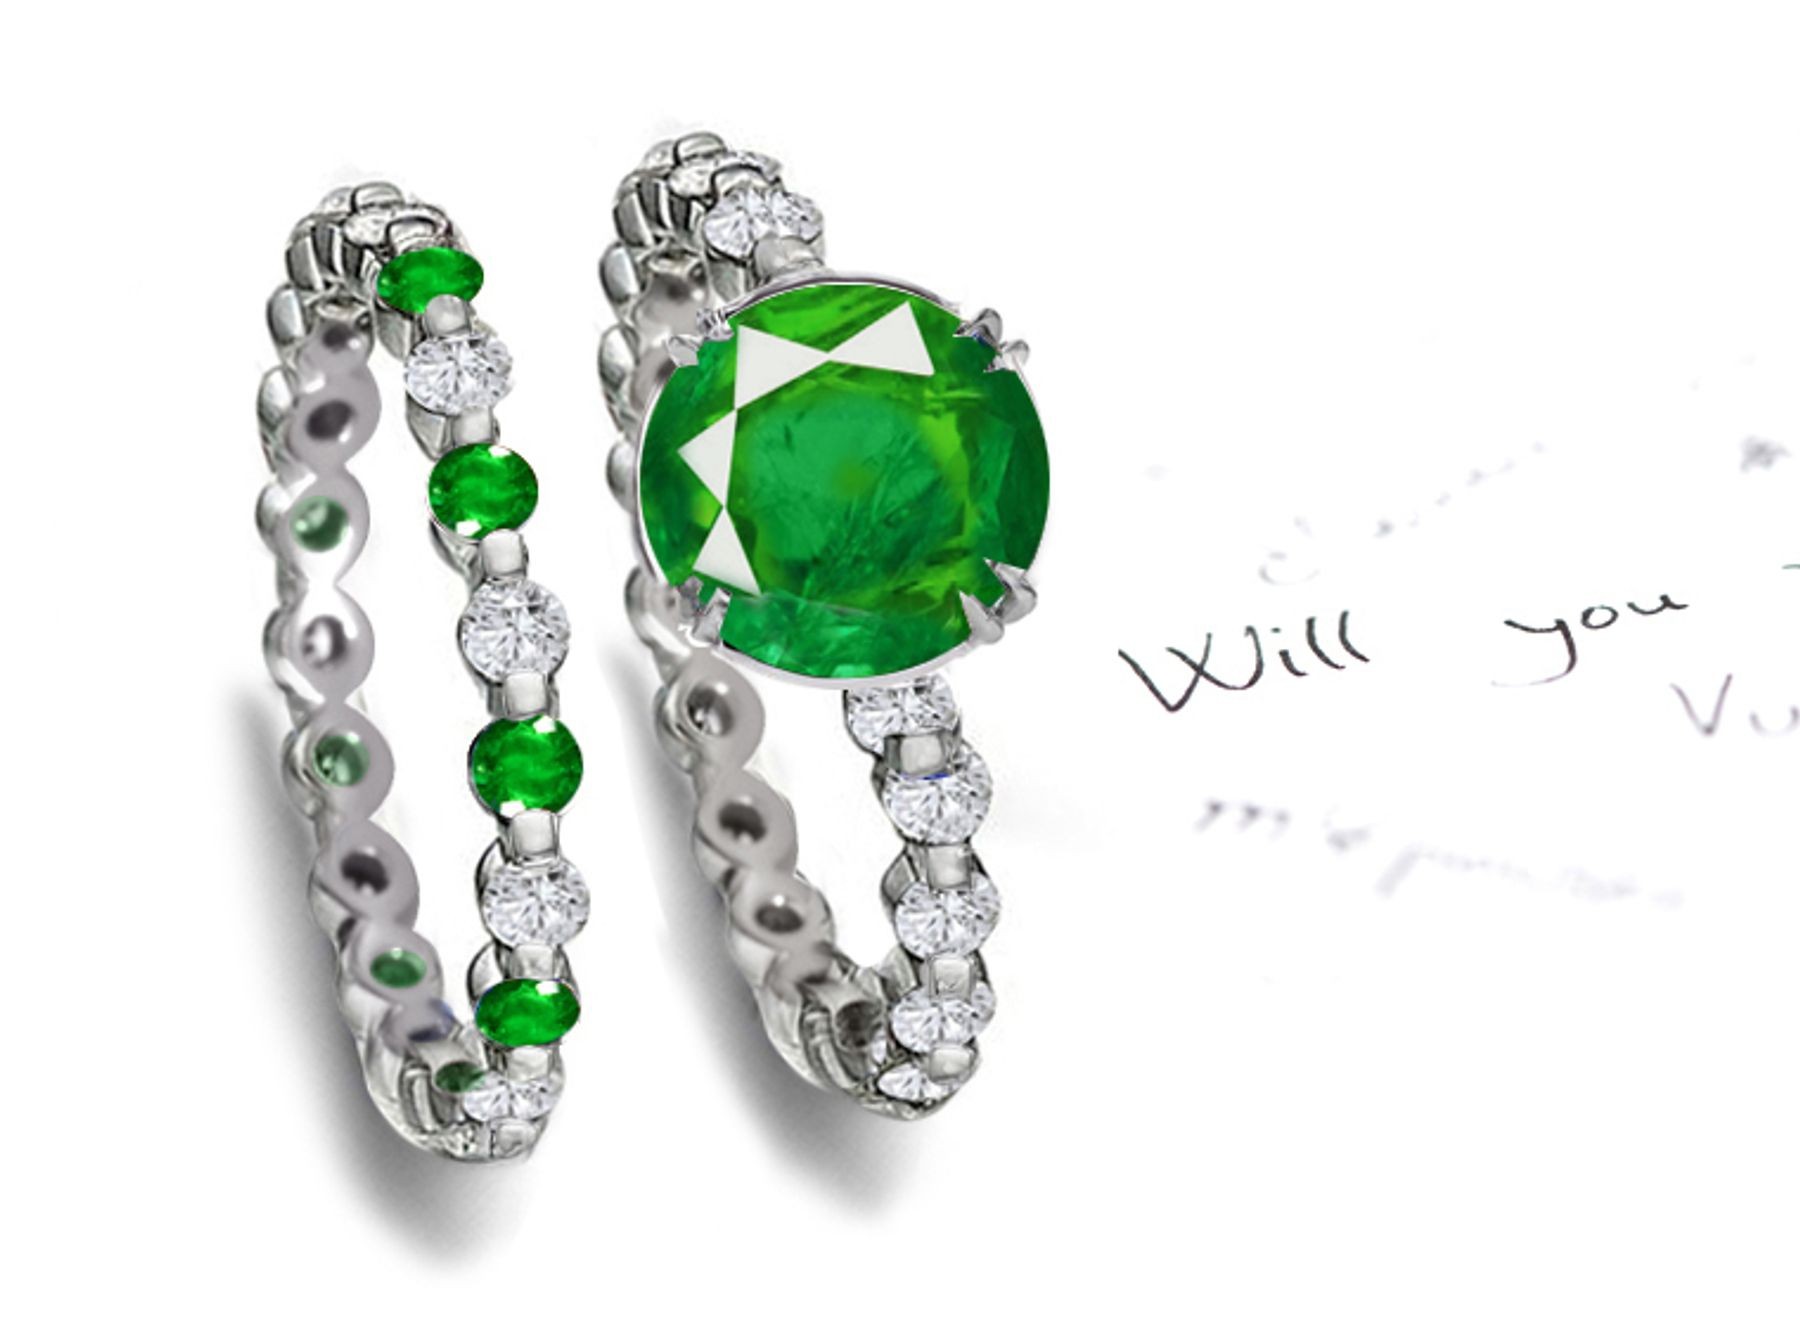 Beautiful Jewelry: Emerald & Diamond Engagement Ring & Matching Wedding Band